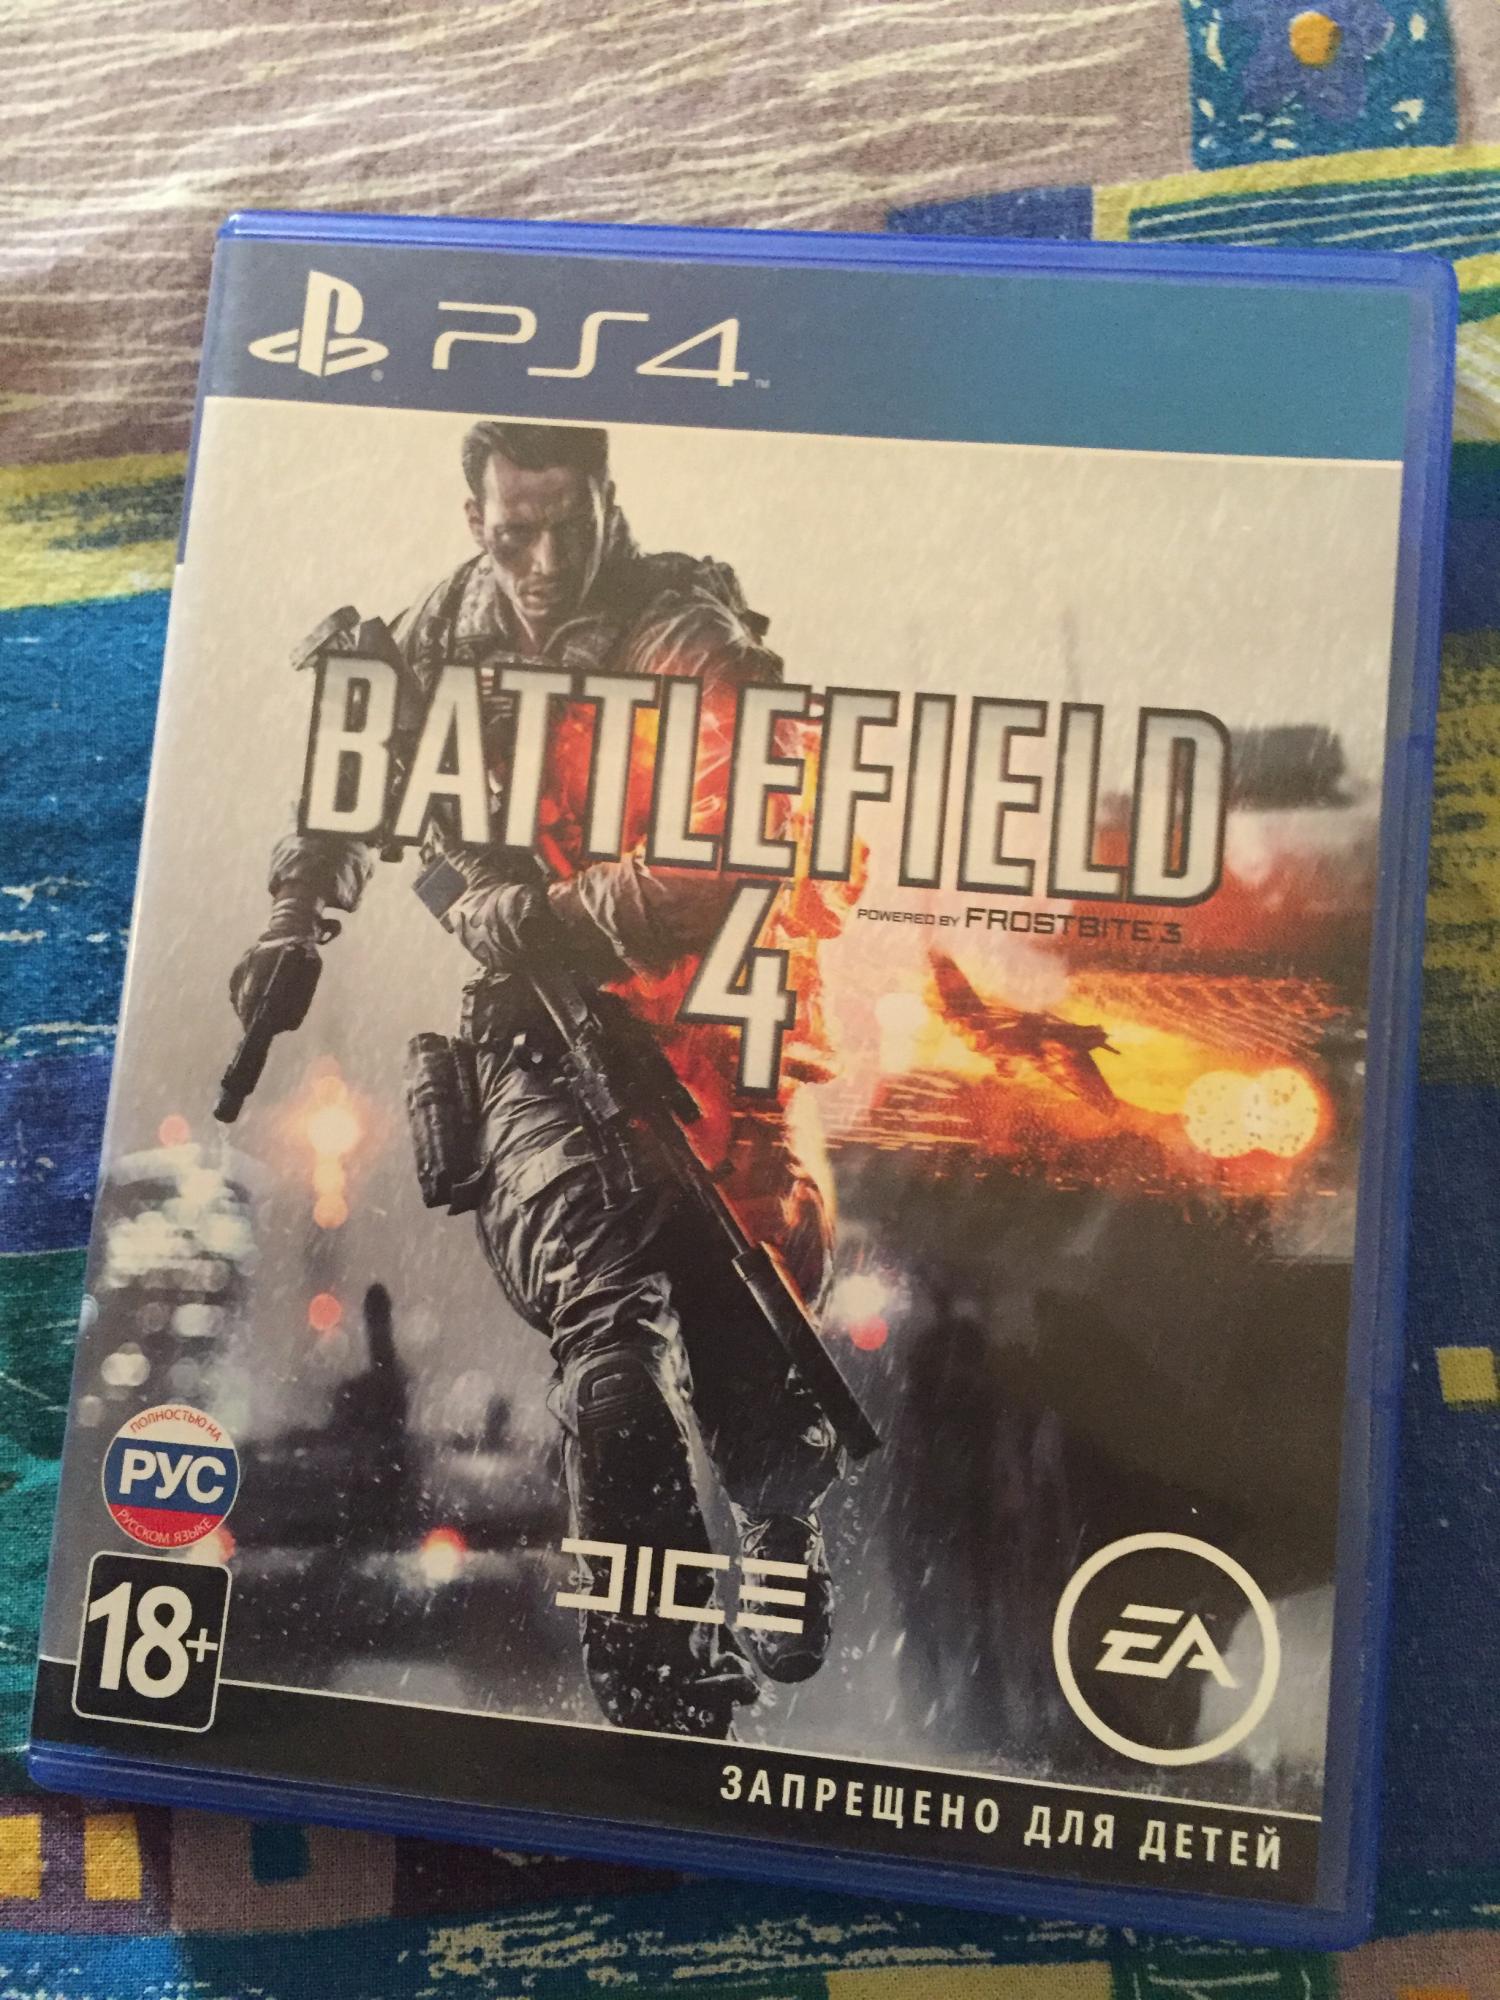 Battlefield 4 PS 4 в Москве 89151296802 купить 1